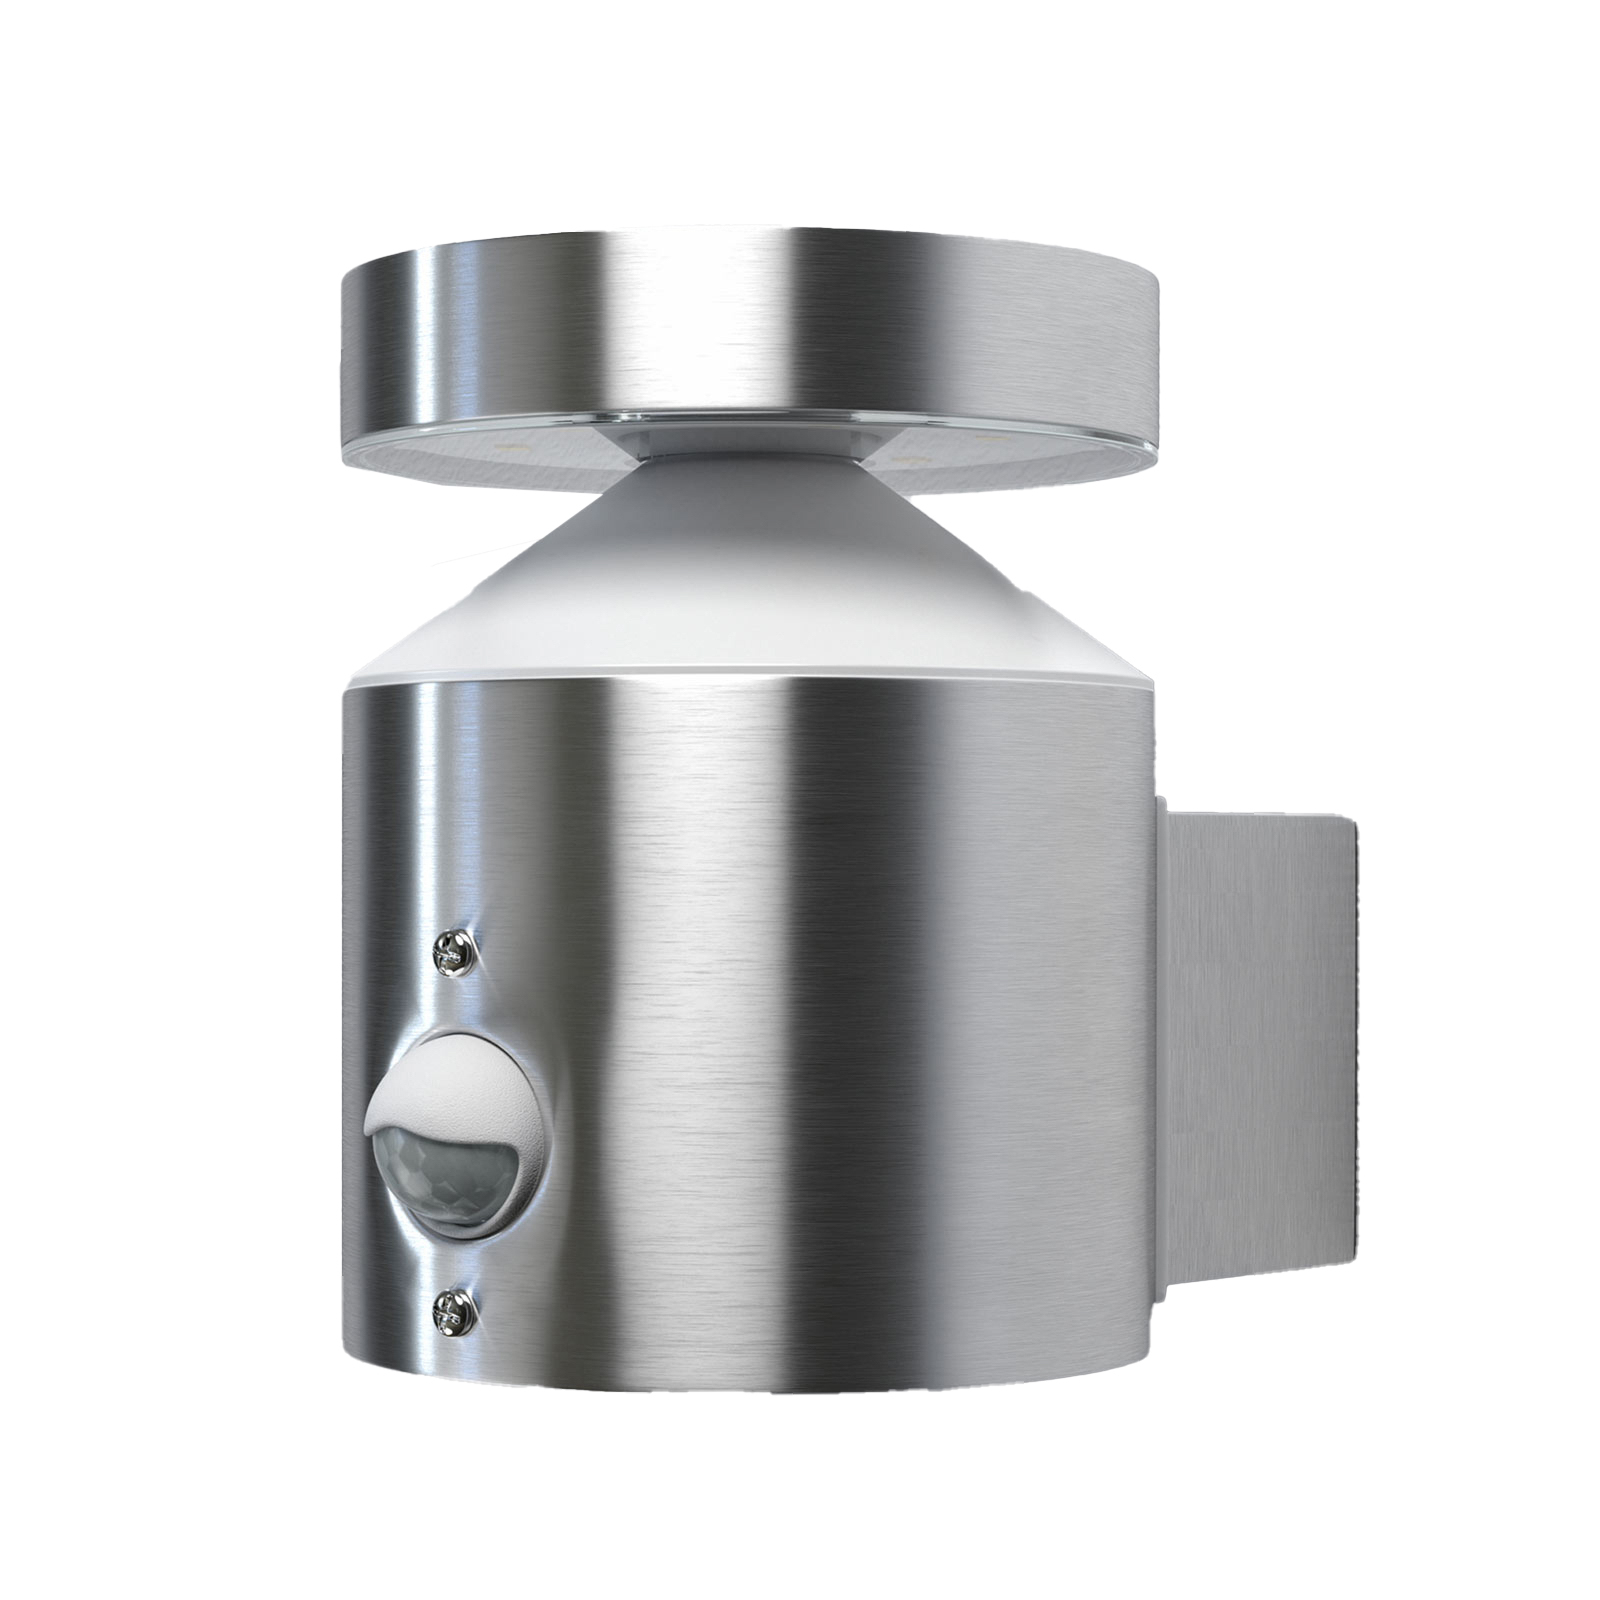 LEDVANCE Endura Style cilindrična senzorska zidna svjetiljka